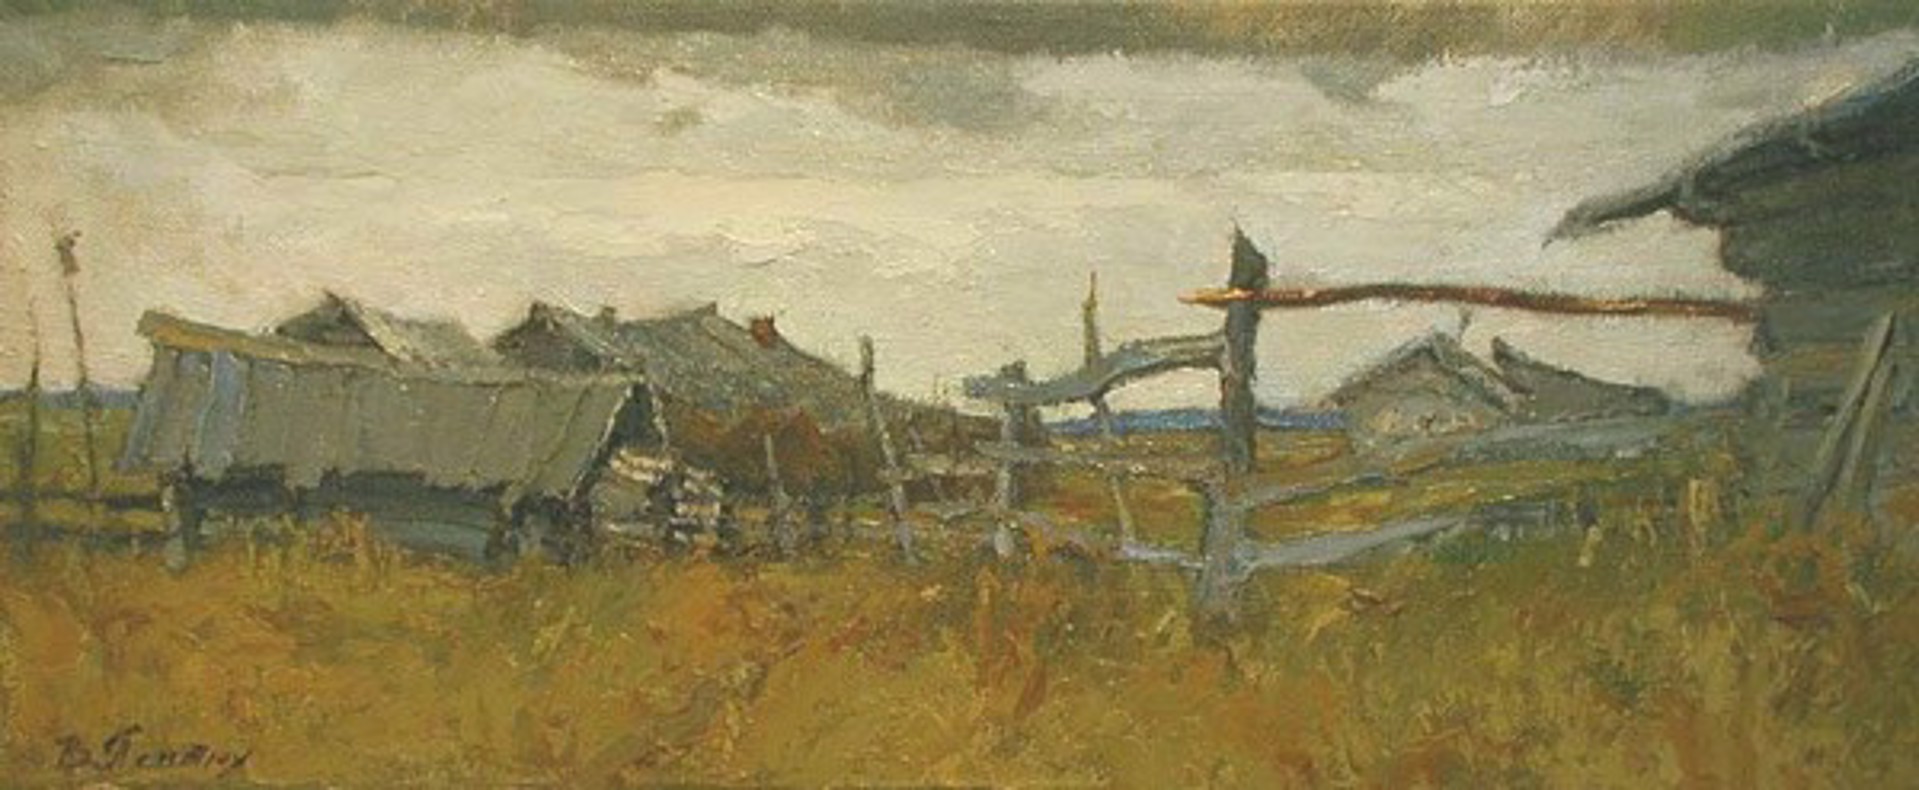 Village Barns by Vladimir Pentjuh